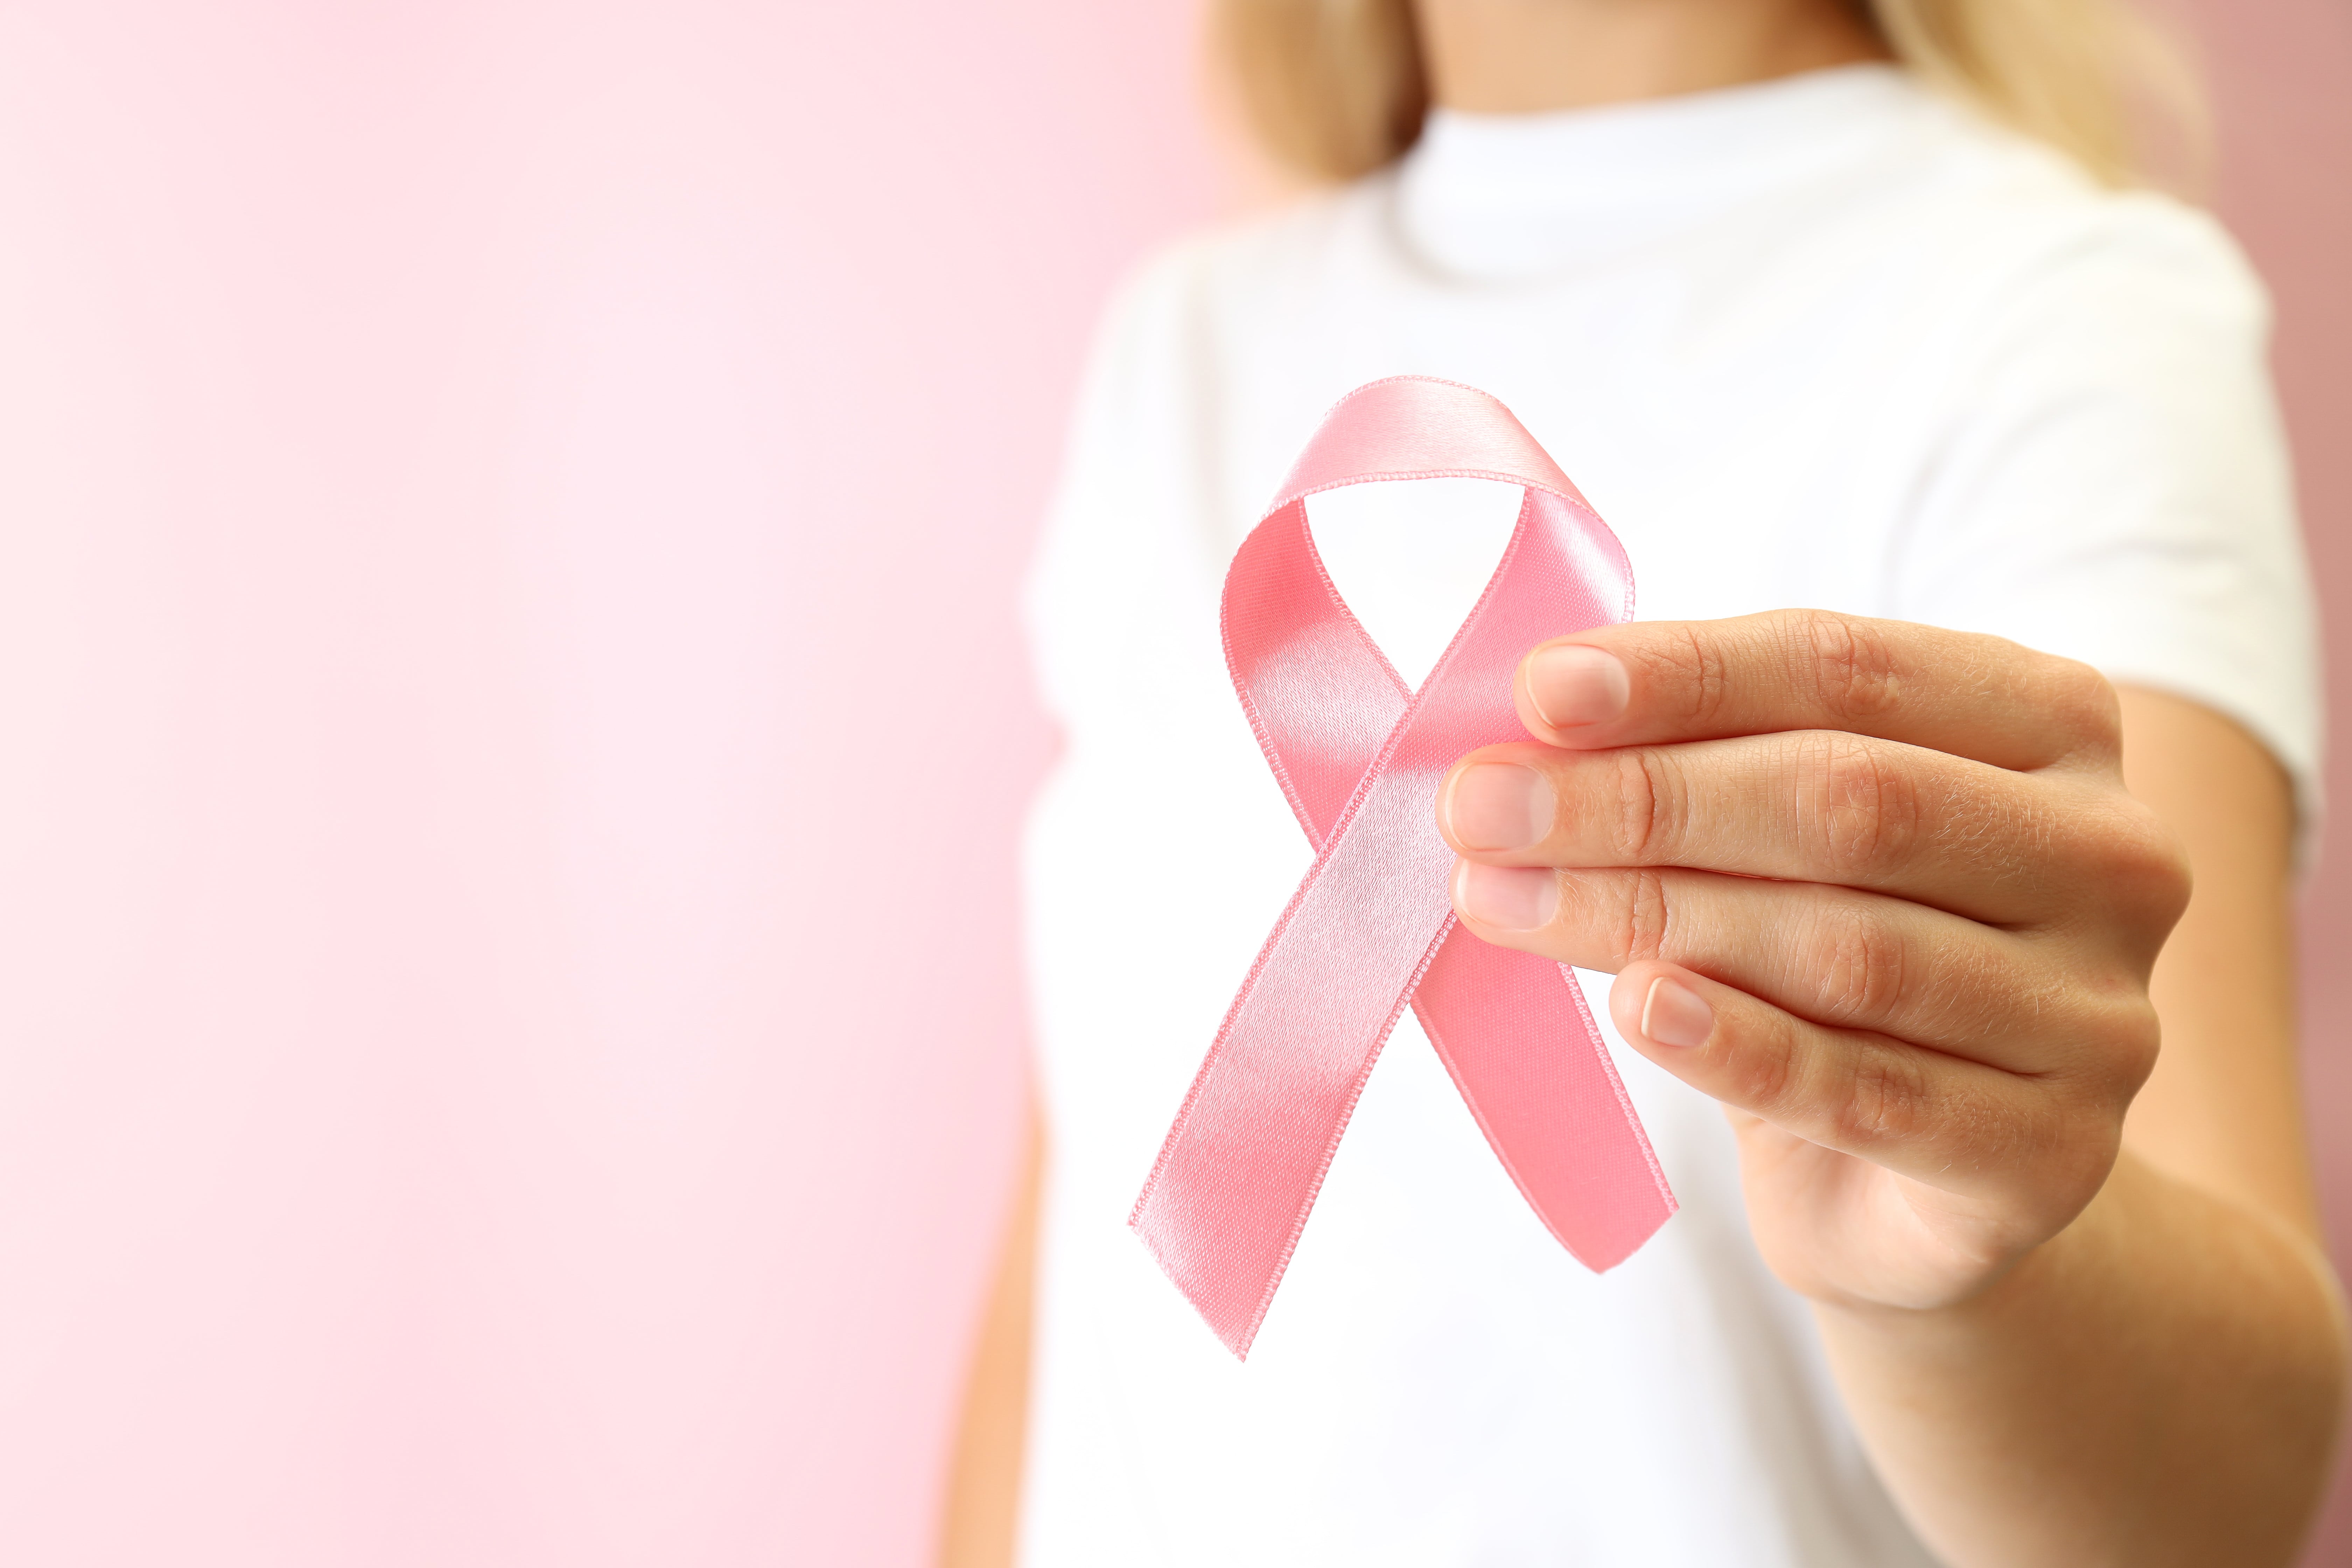 Dra. Kathryn alerta ainda que apenas 10% dos cânceres de mama têm fator hereditário, ou seja, o motivo da grande maioria dos cânceres é a falta de cuidado.